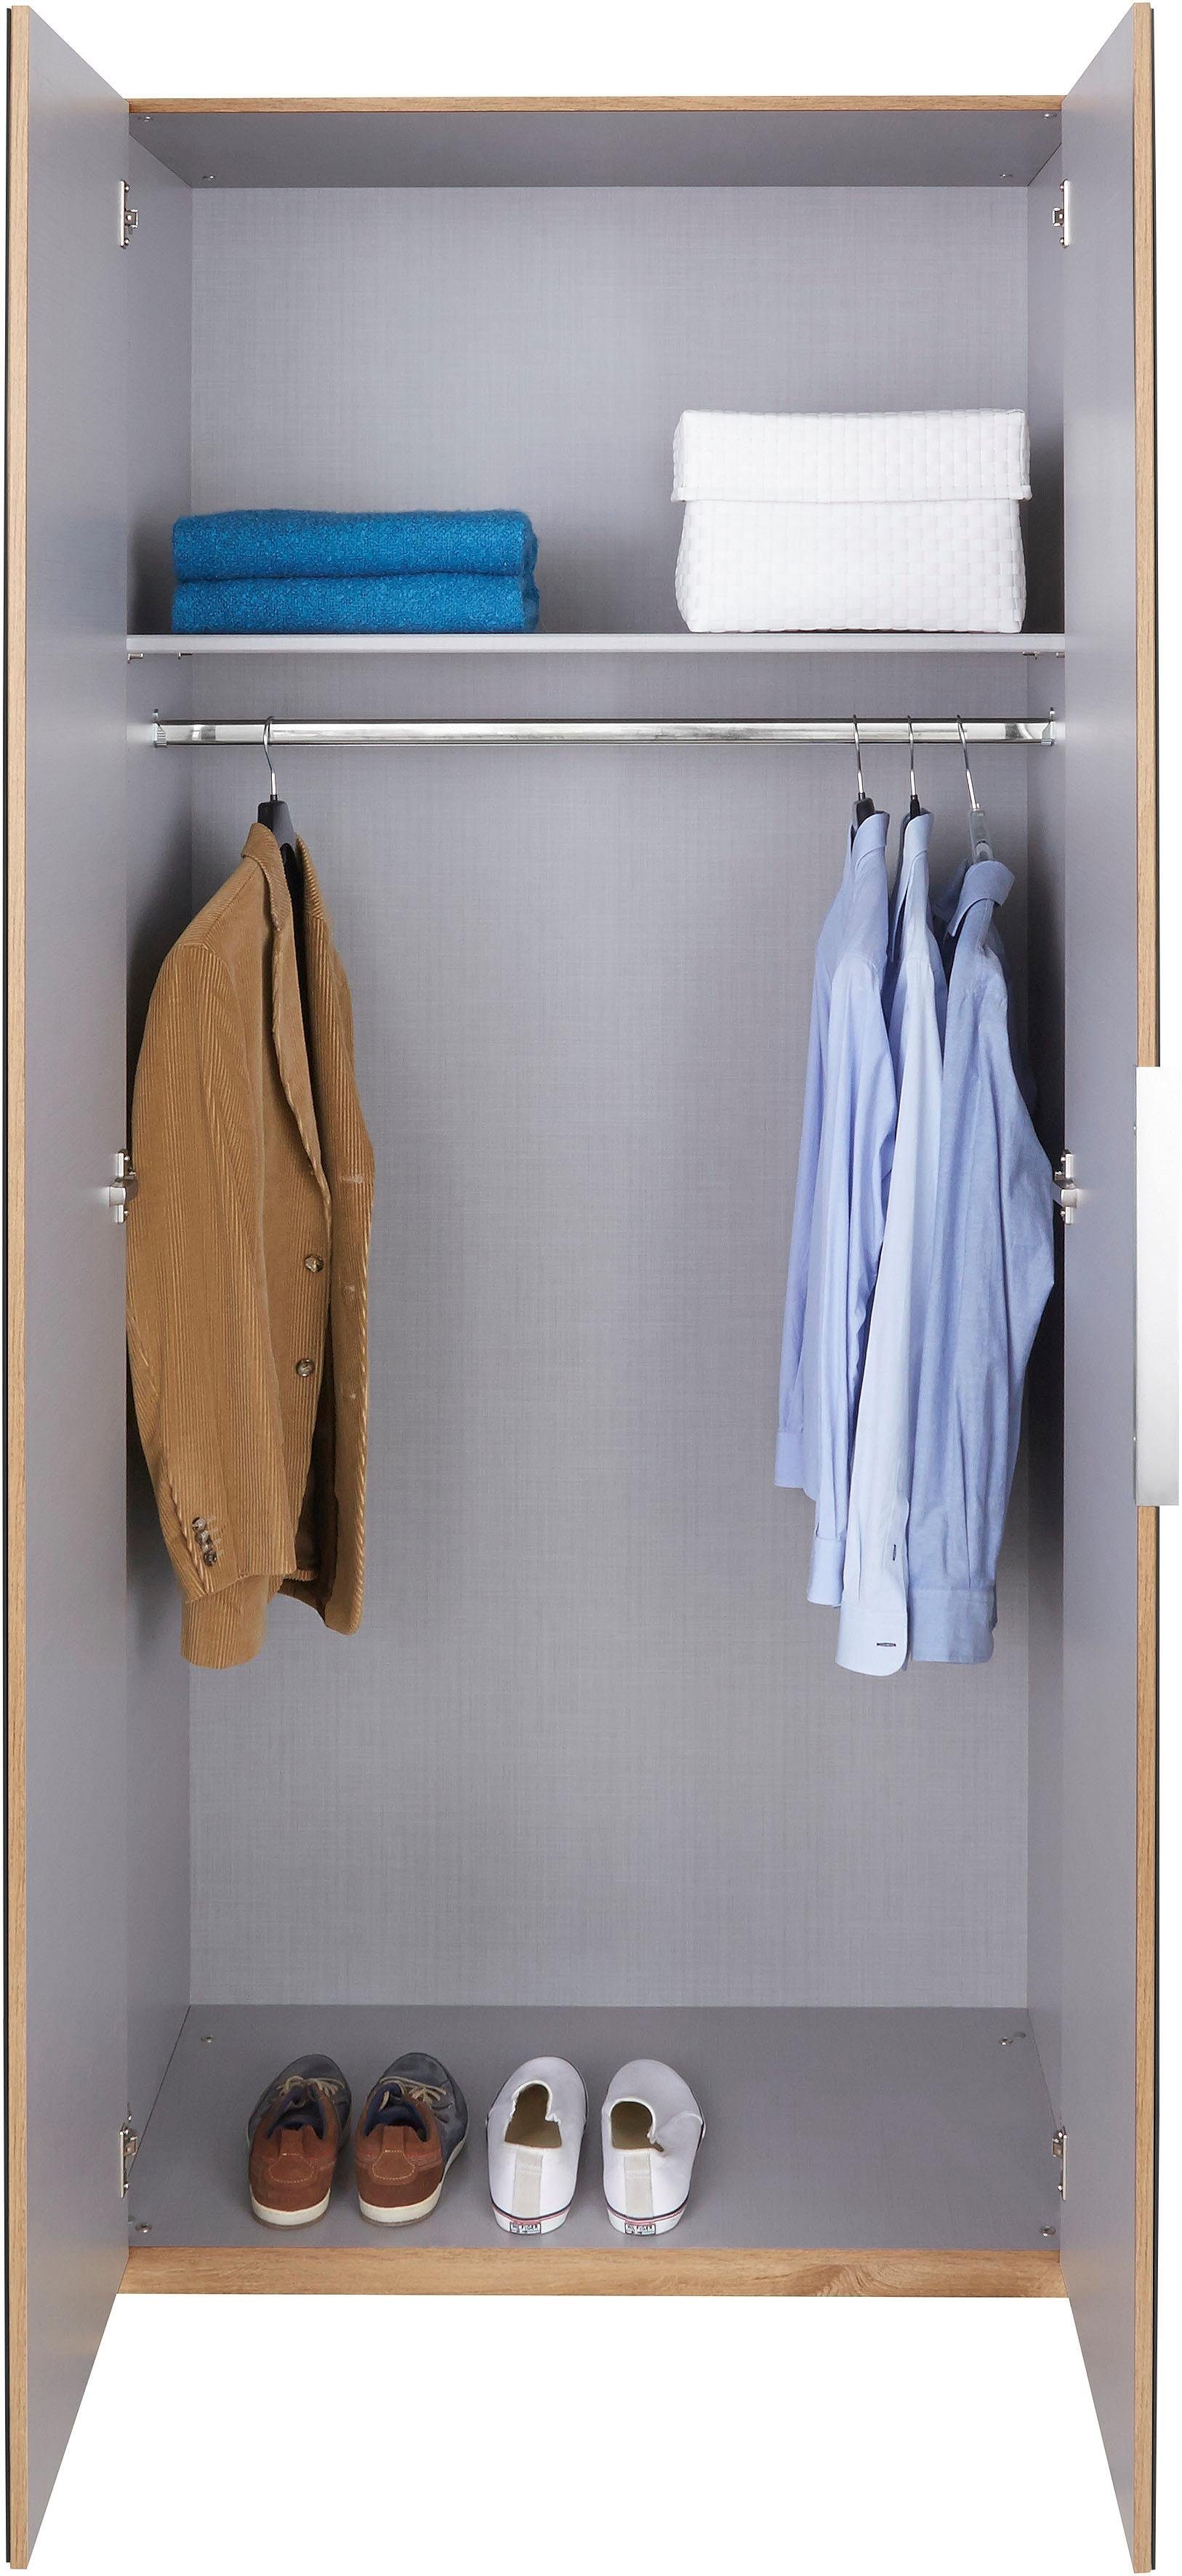 To Go vollflächig Türen Fresh Kleiderschrank Level farbigem mit plankeneichefarben/Grauglas Glas